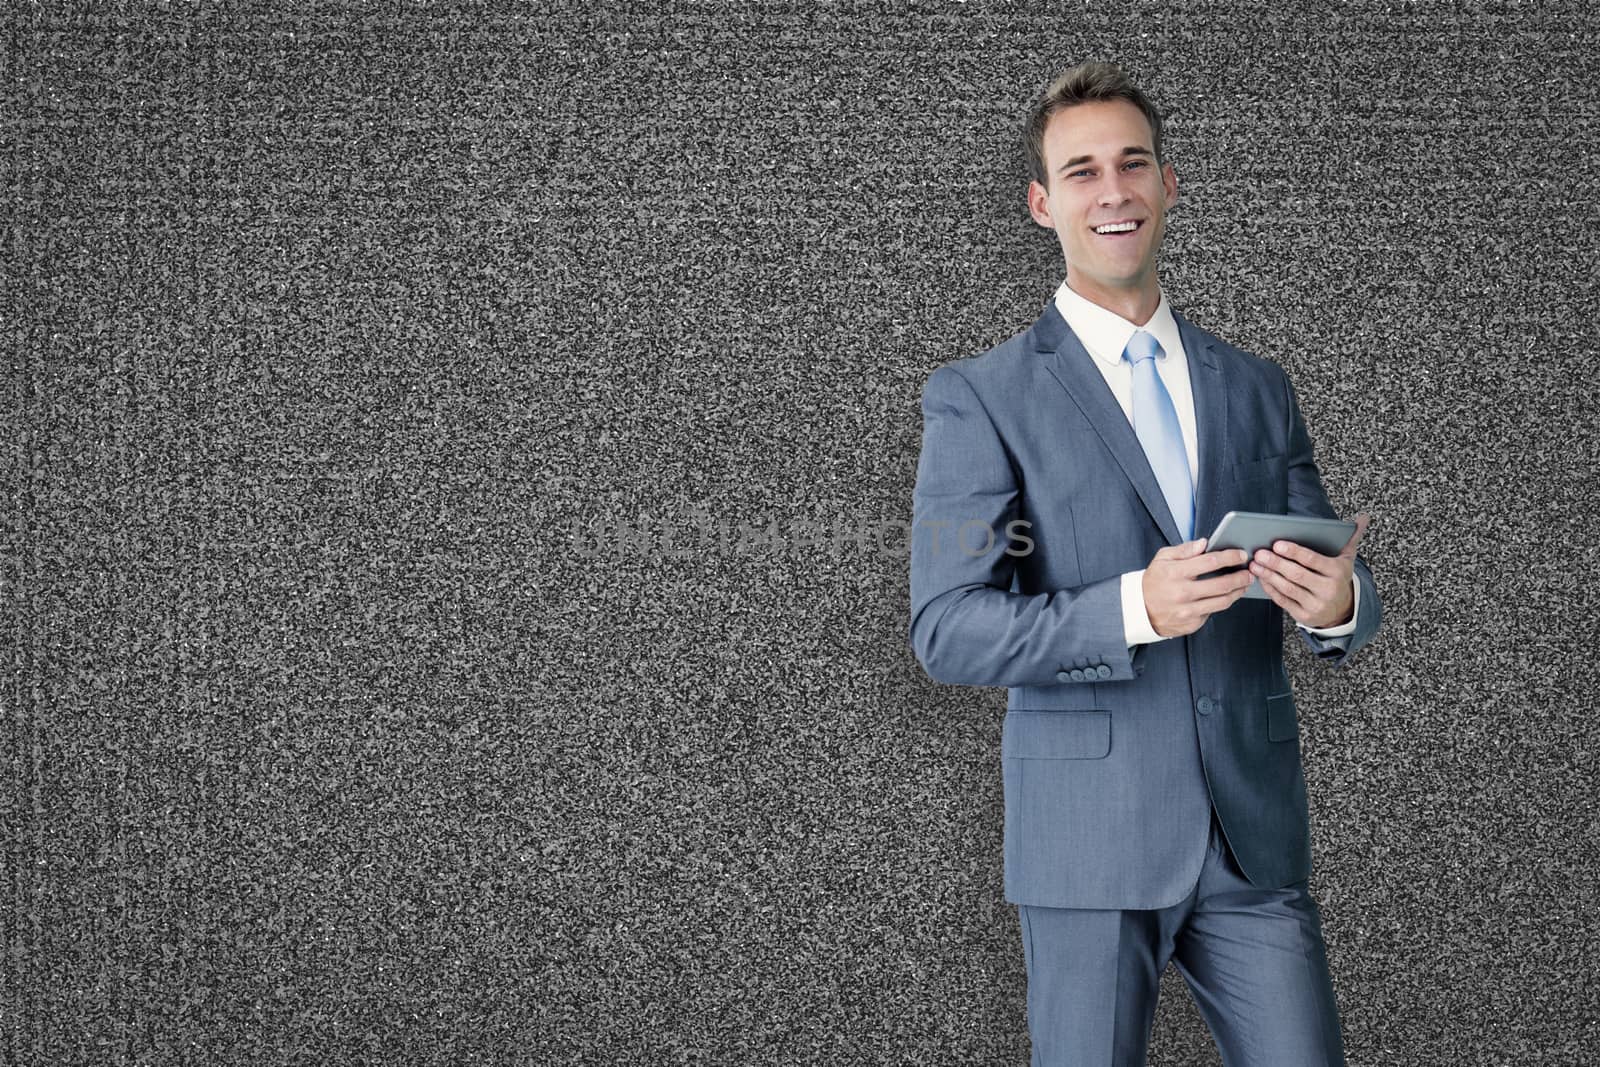 Businessman using tablet against black background